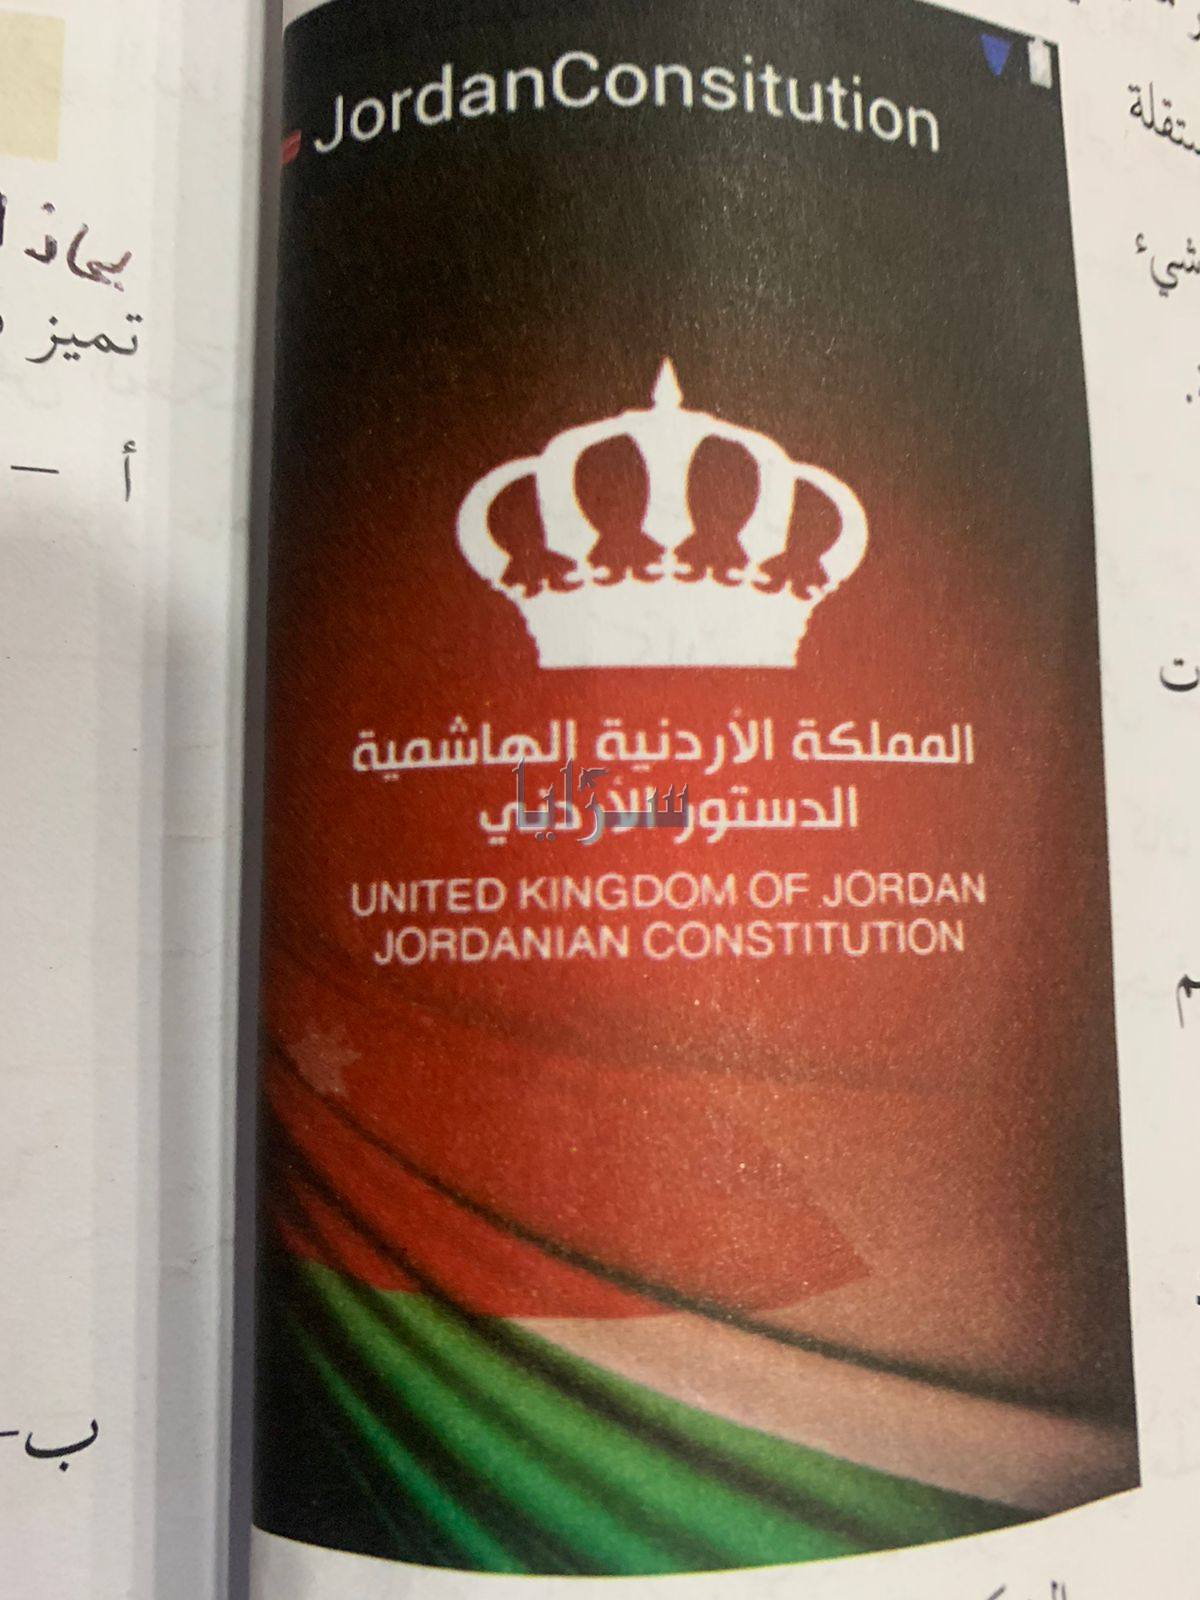 "المملكة المتحدة الأردنية"  ..  طالب توجيهي يكتشف خطأ في كتاب تاريخ الأردن - صور 